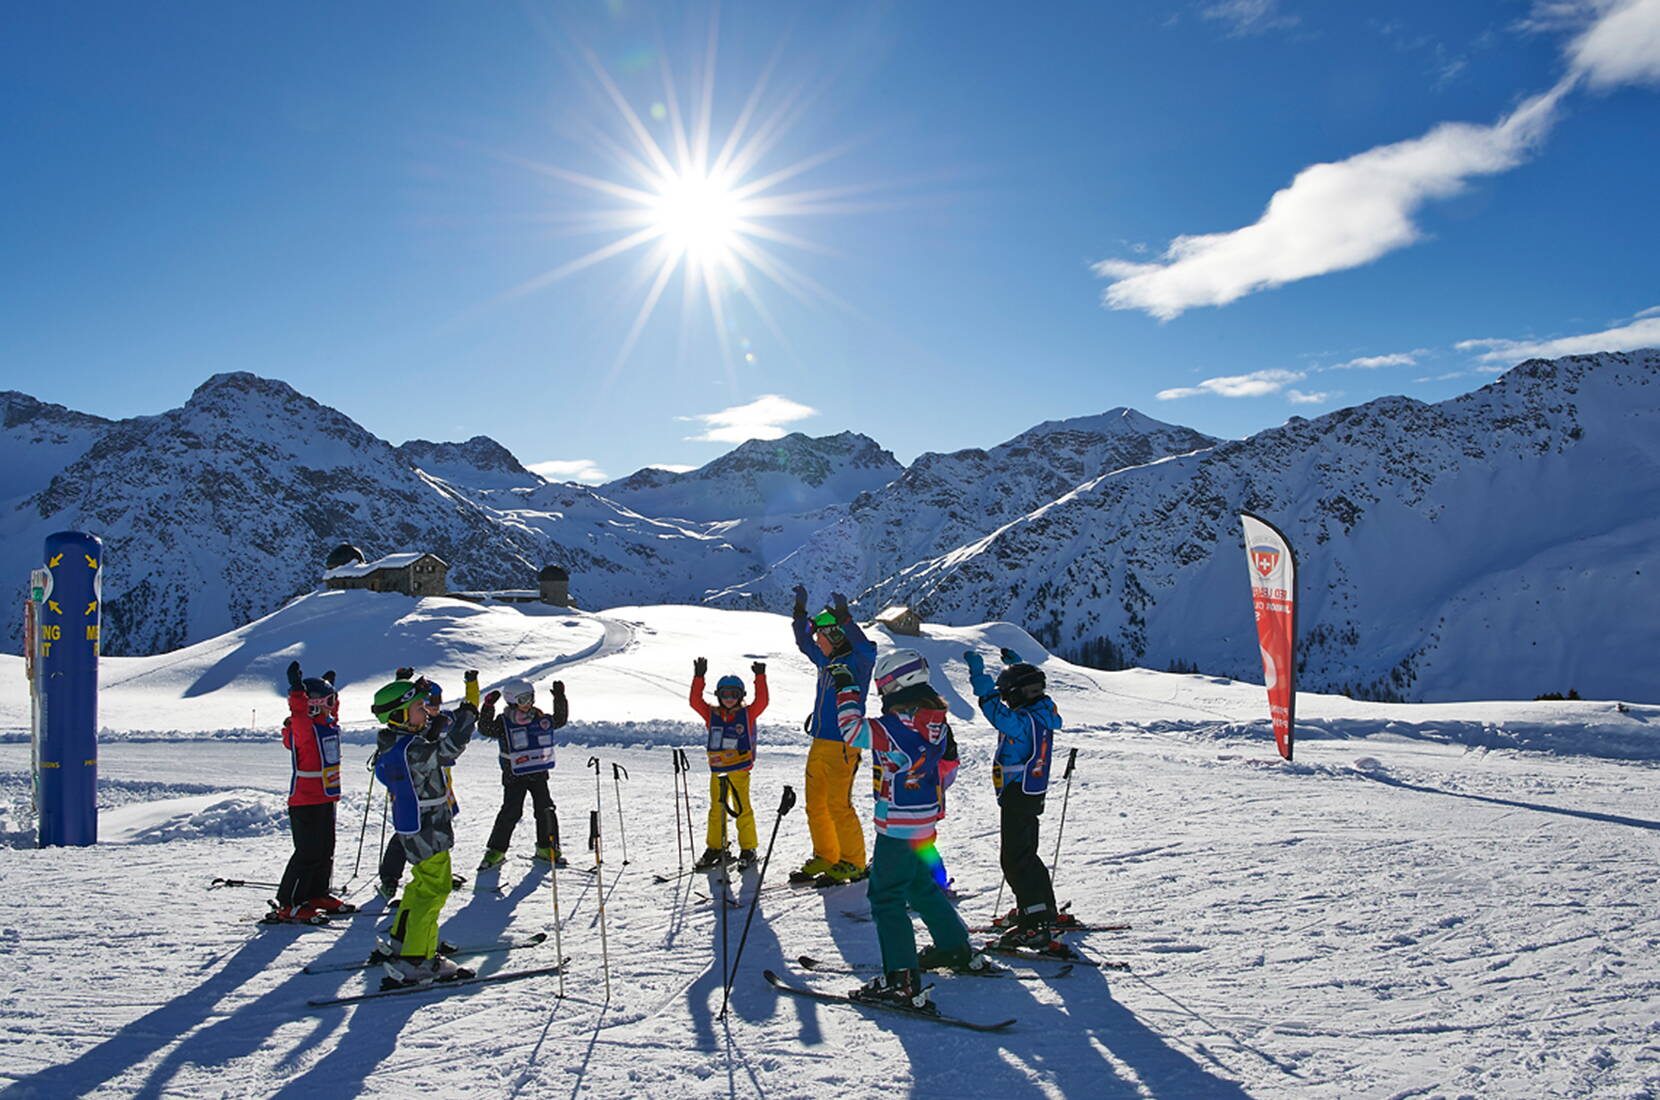 Familienausflug Arosa Lenzerheide. Das Schneesportgebiet Arosa Lenzerheide freut sich auf euren Besuch in den Bergen und lässt euer Herz in unserem Schneesportparadies höher schlagen.